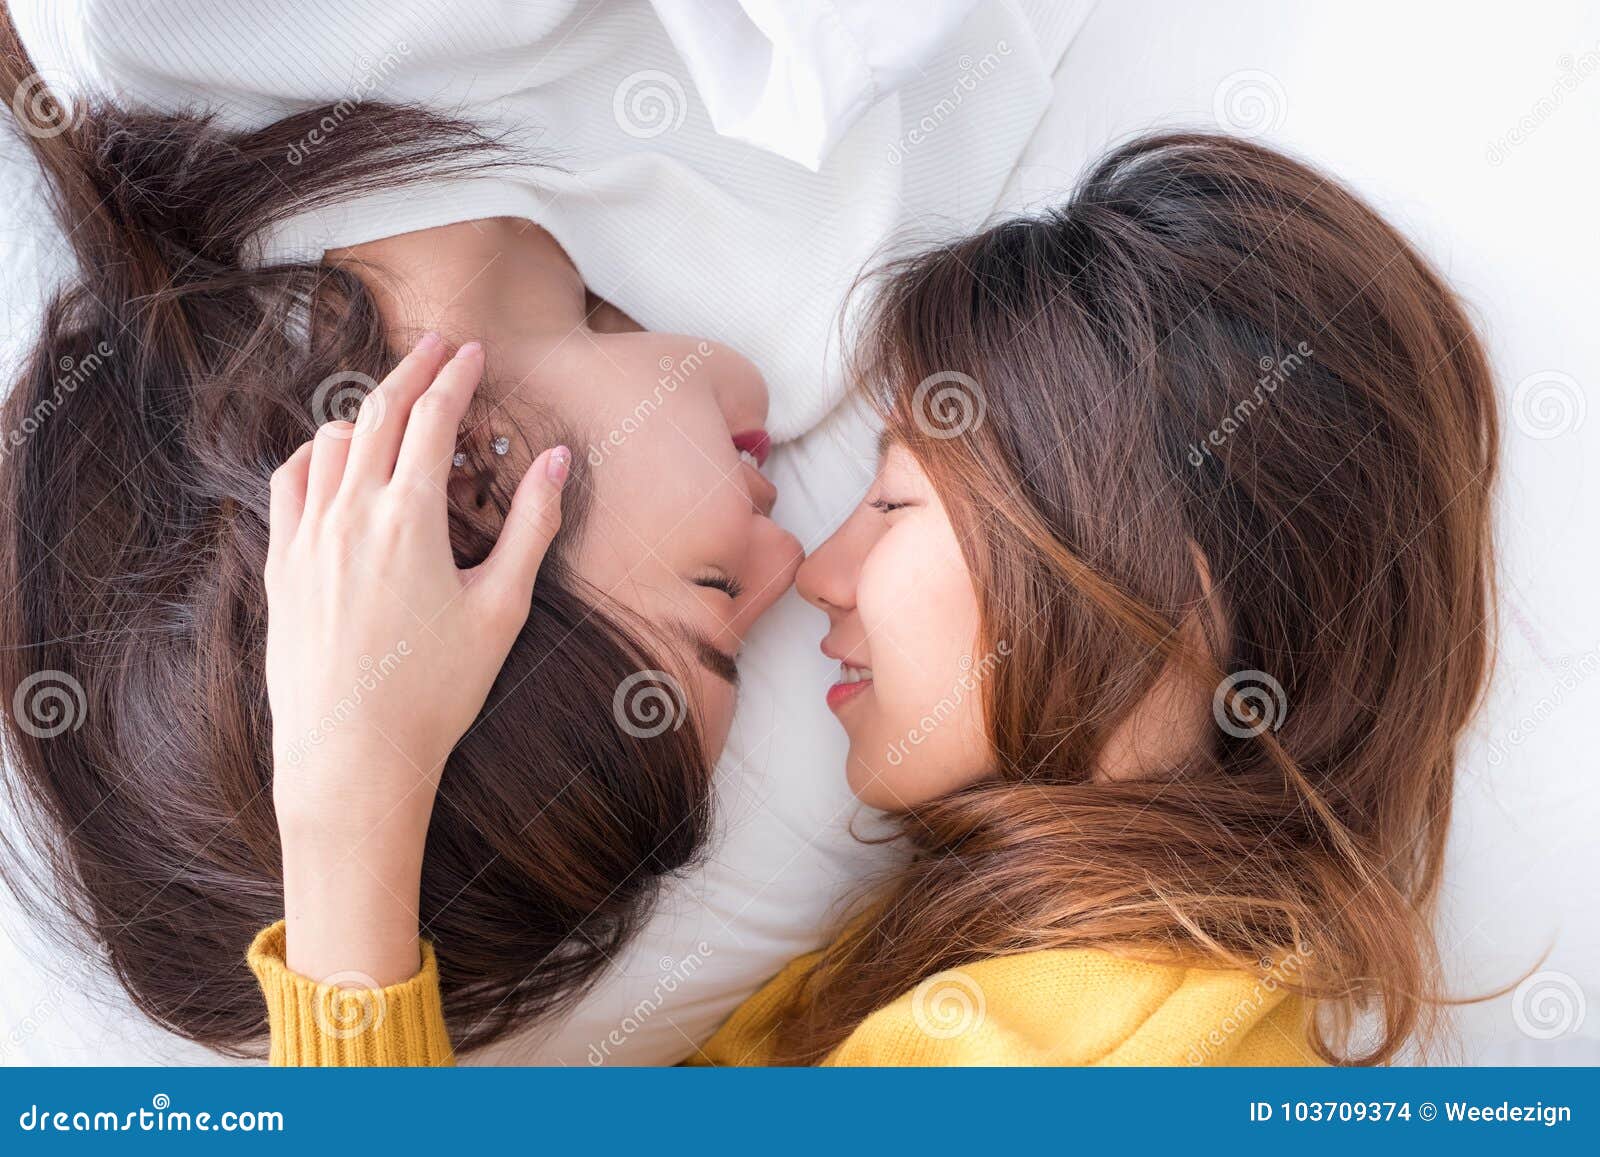 cute asian lesbian kiss nude gallerie